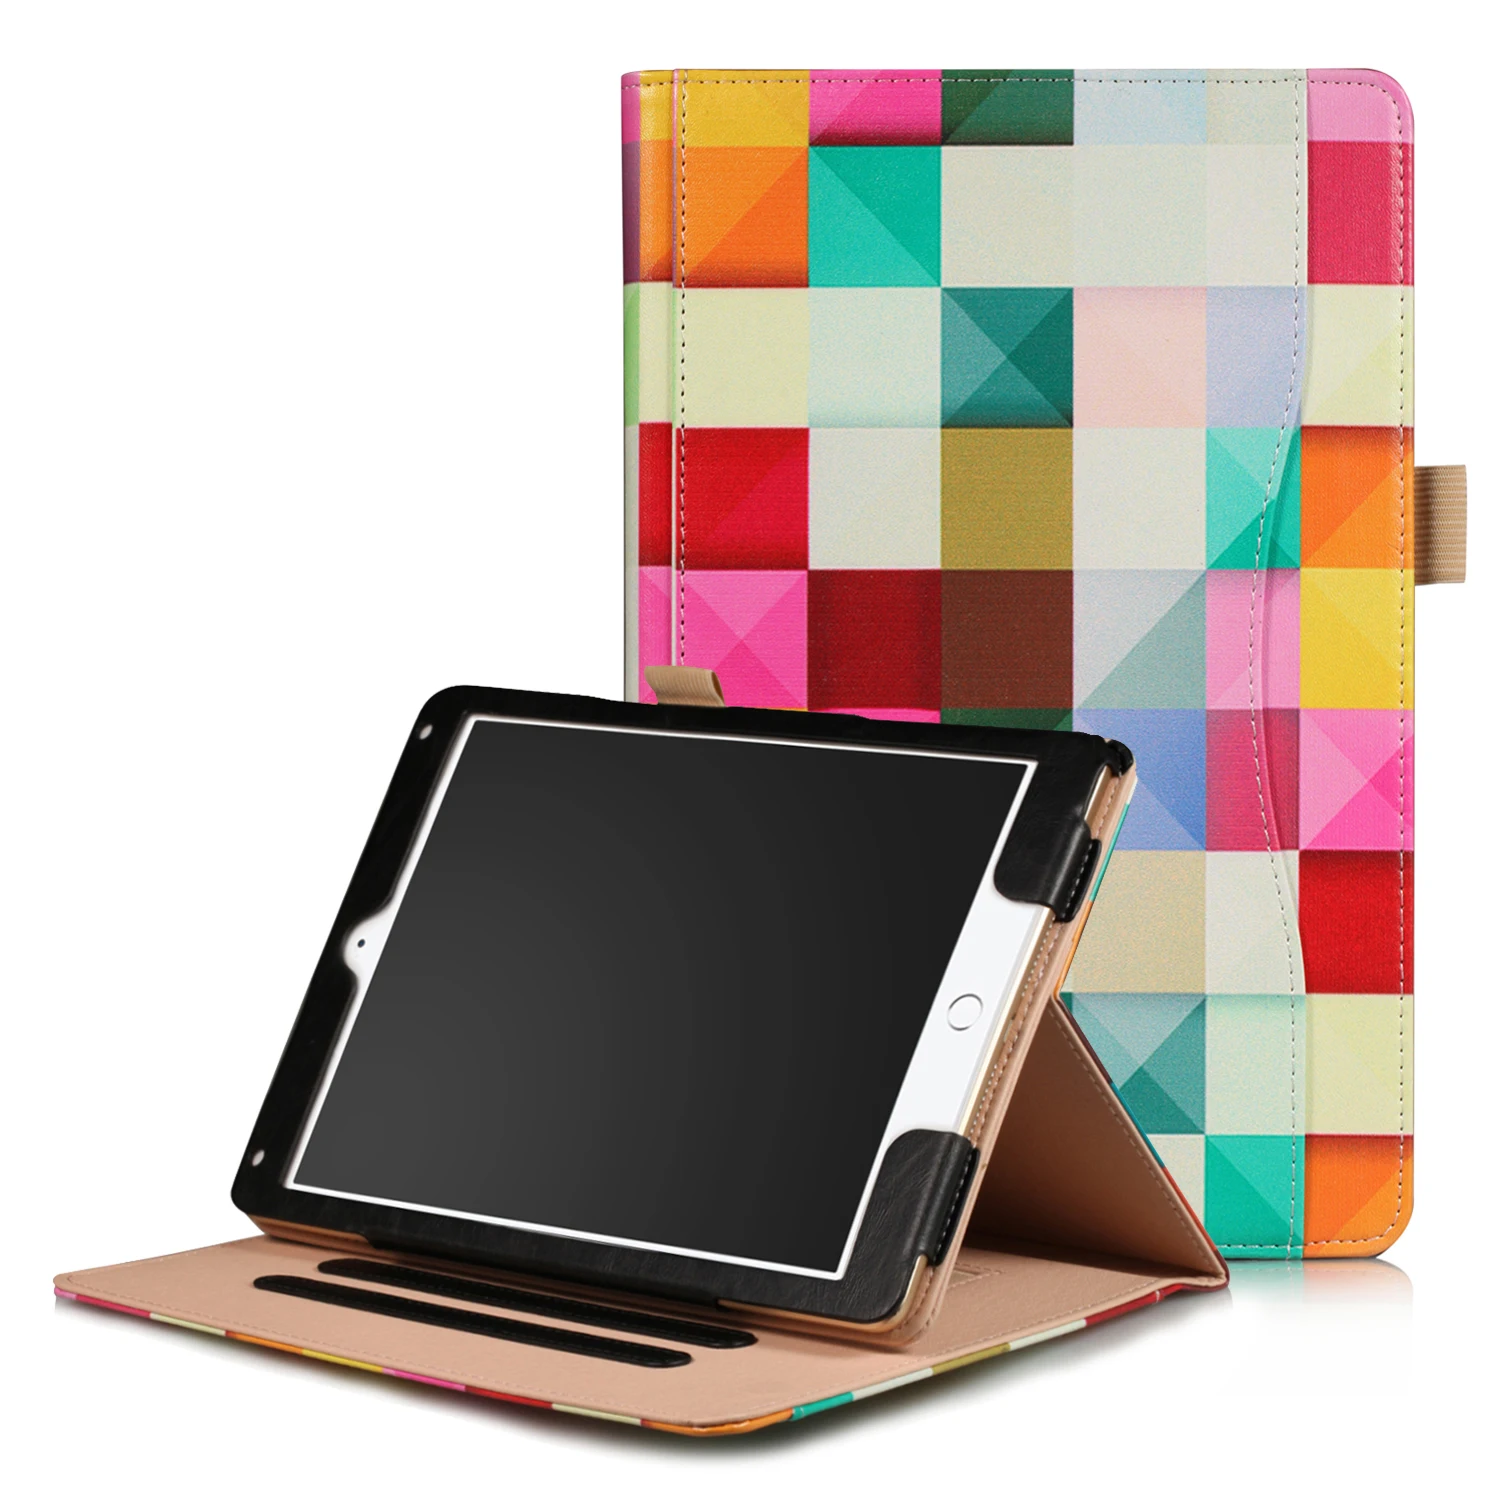 Чехол для Apple ipad 9,7 дюйма Противоударная защитная оболочка чехол для ipad air 1/2 Tablet чехол из искусственной кожи - Цвет: Grid